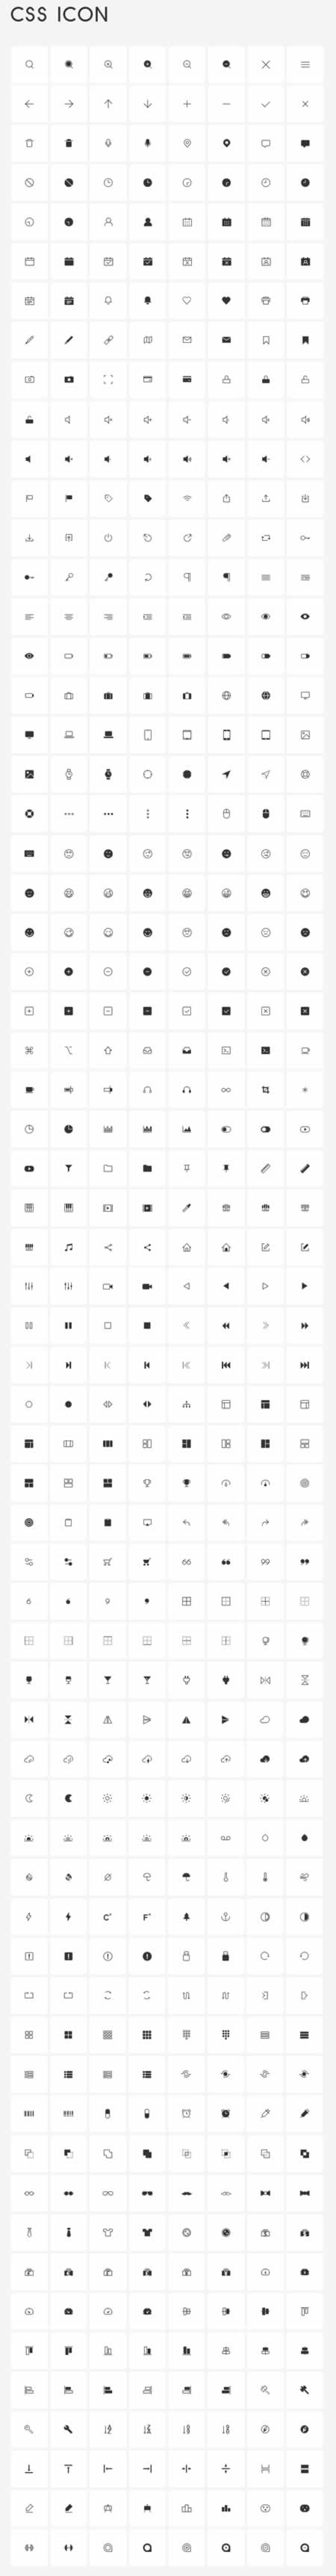 512个CSS图标形状(icon shape)